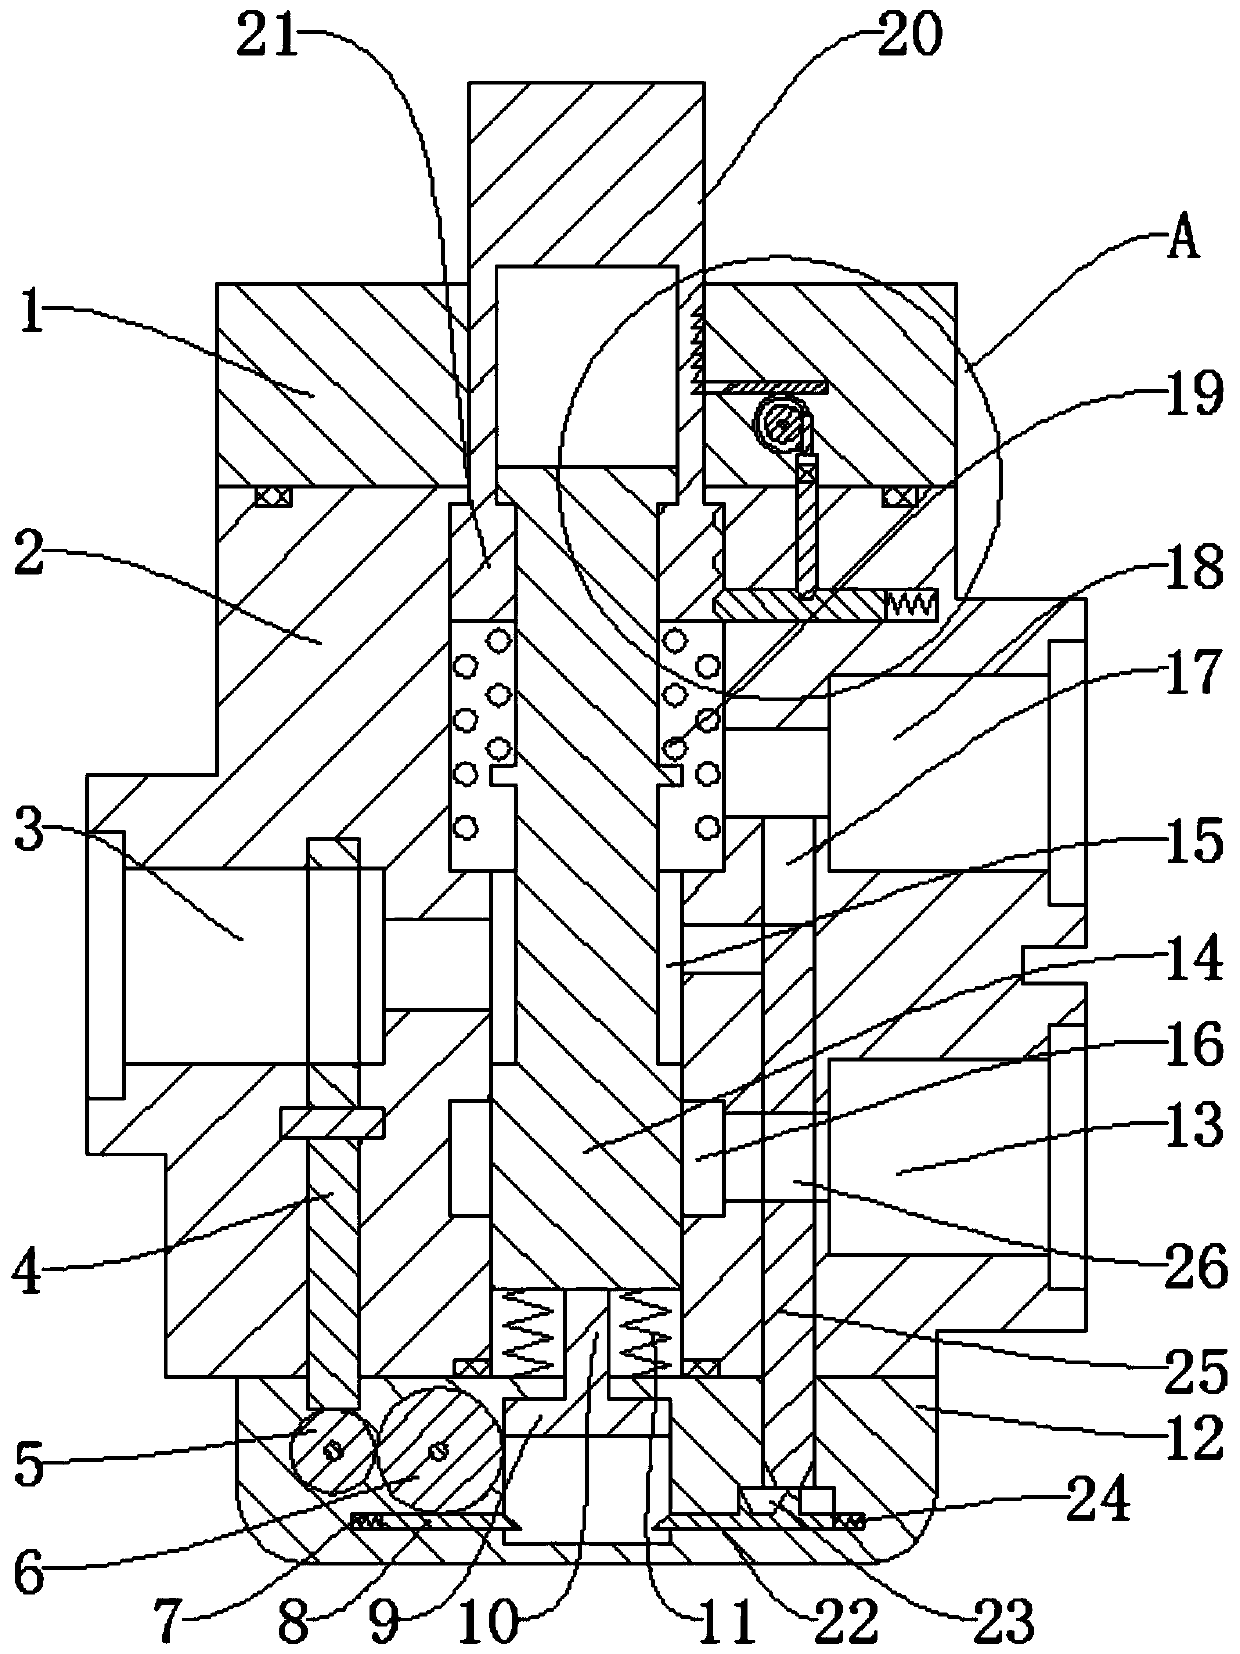 Anti-continuous-treading accelerator valve